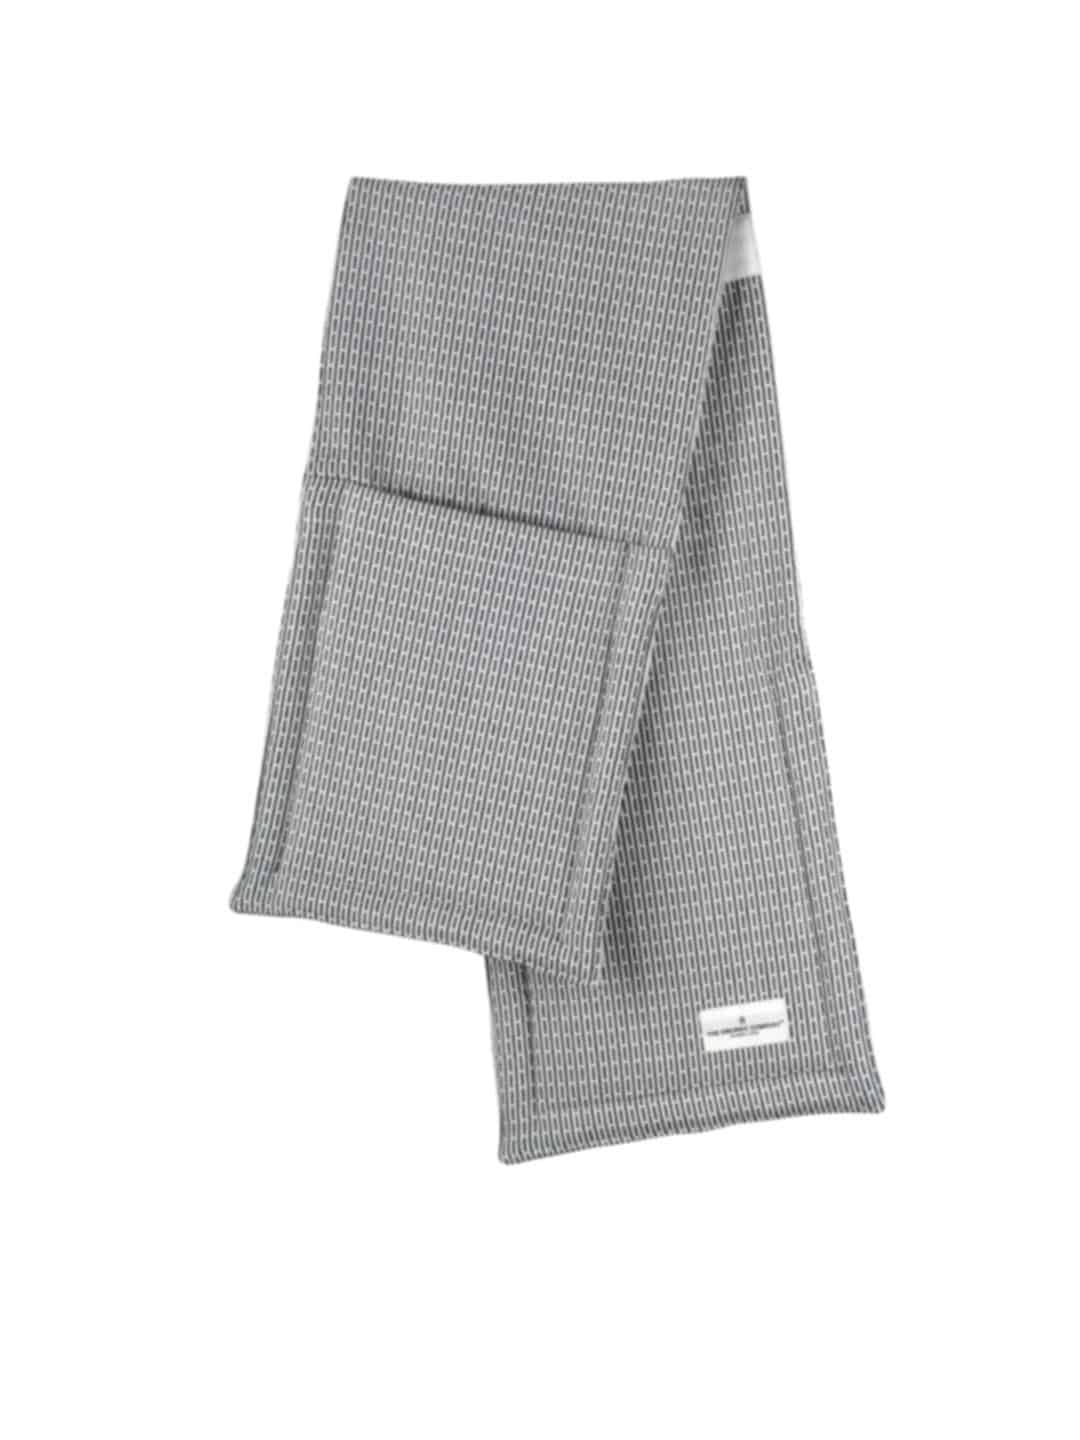 Полотенце-перчатки для духовки TheOrganic, 100х22см цвета утренний серый на белом фоне